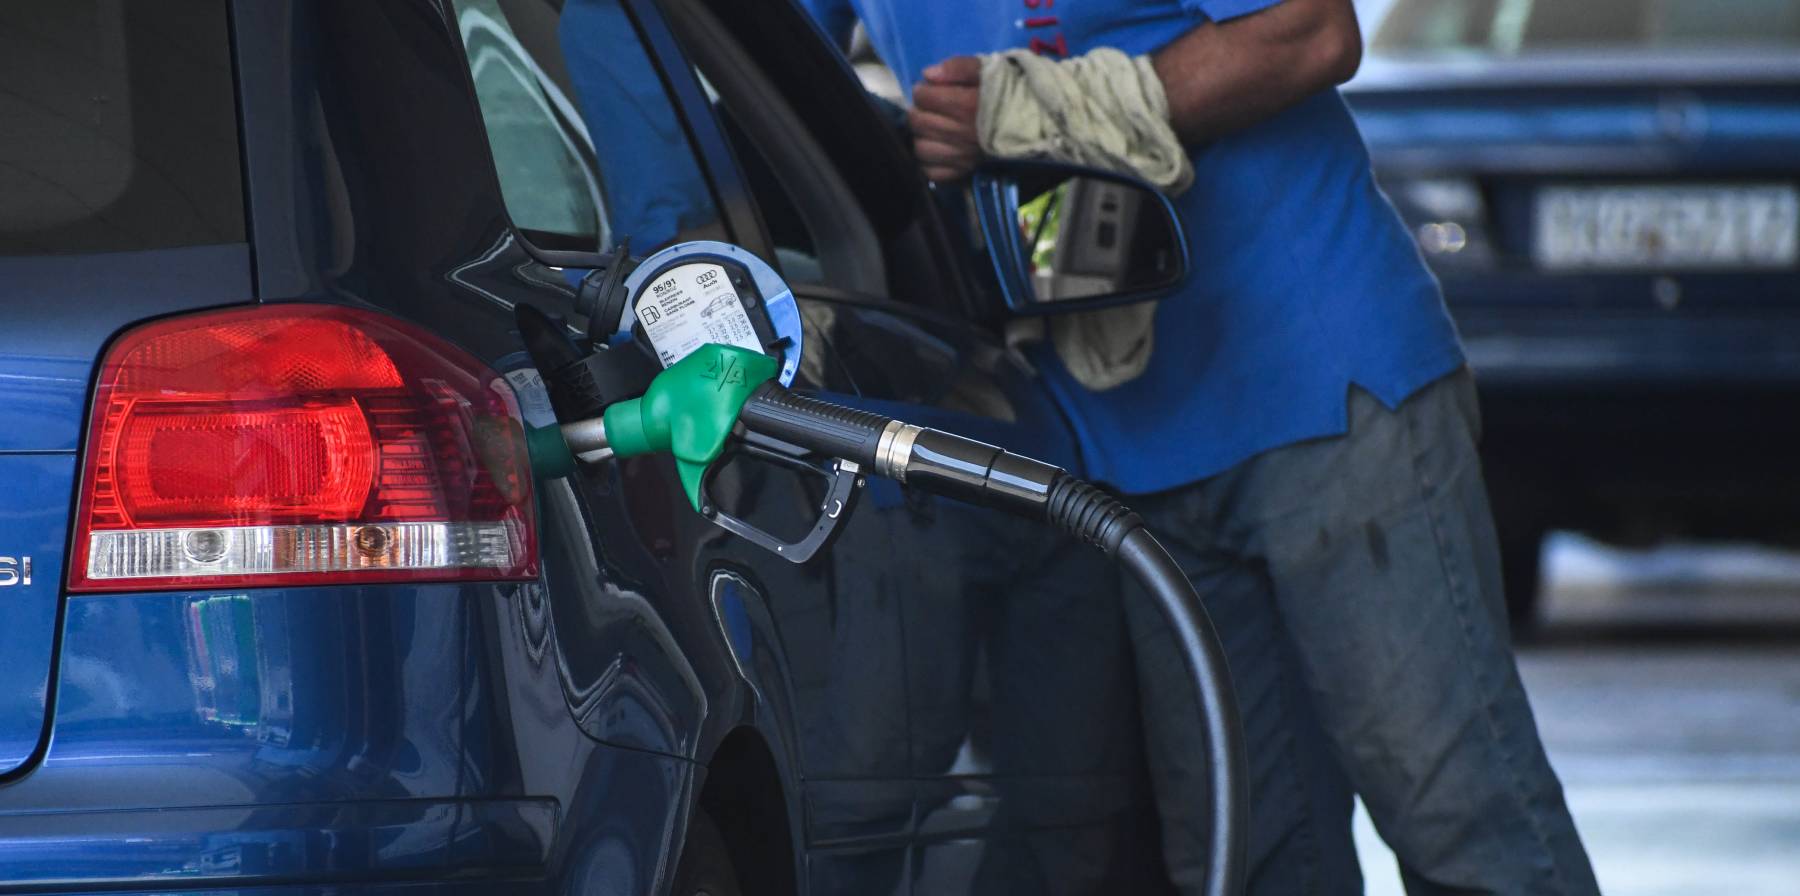 Καύσιμα – Νέα μέτρα: Πόσο θα μειωθεί η τιμή βενζίνης και πετρελαίου